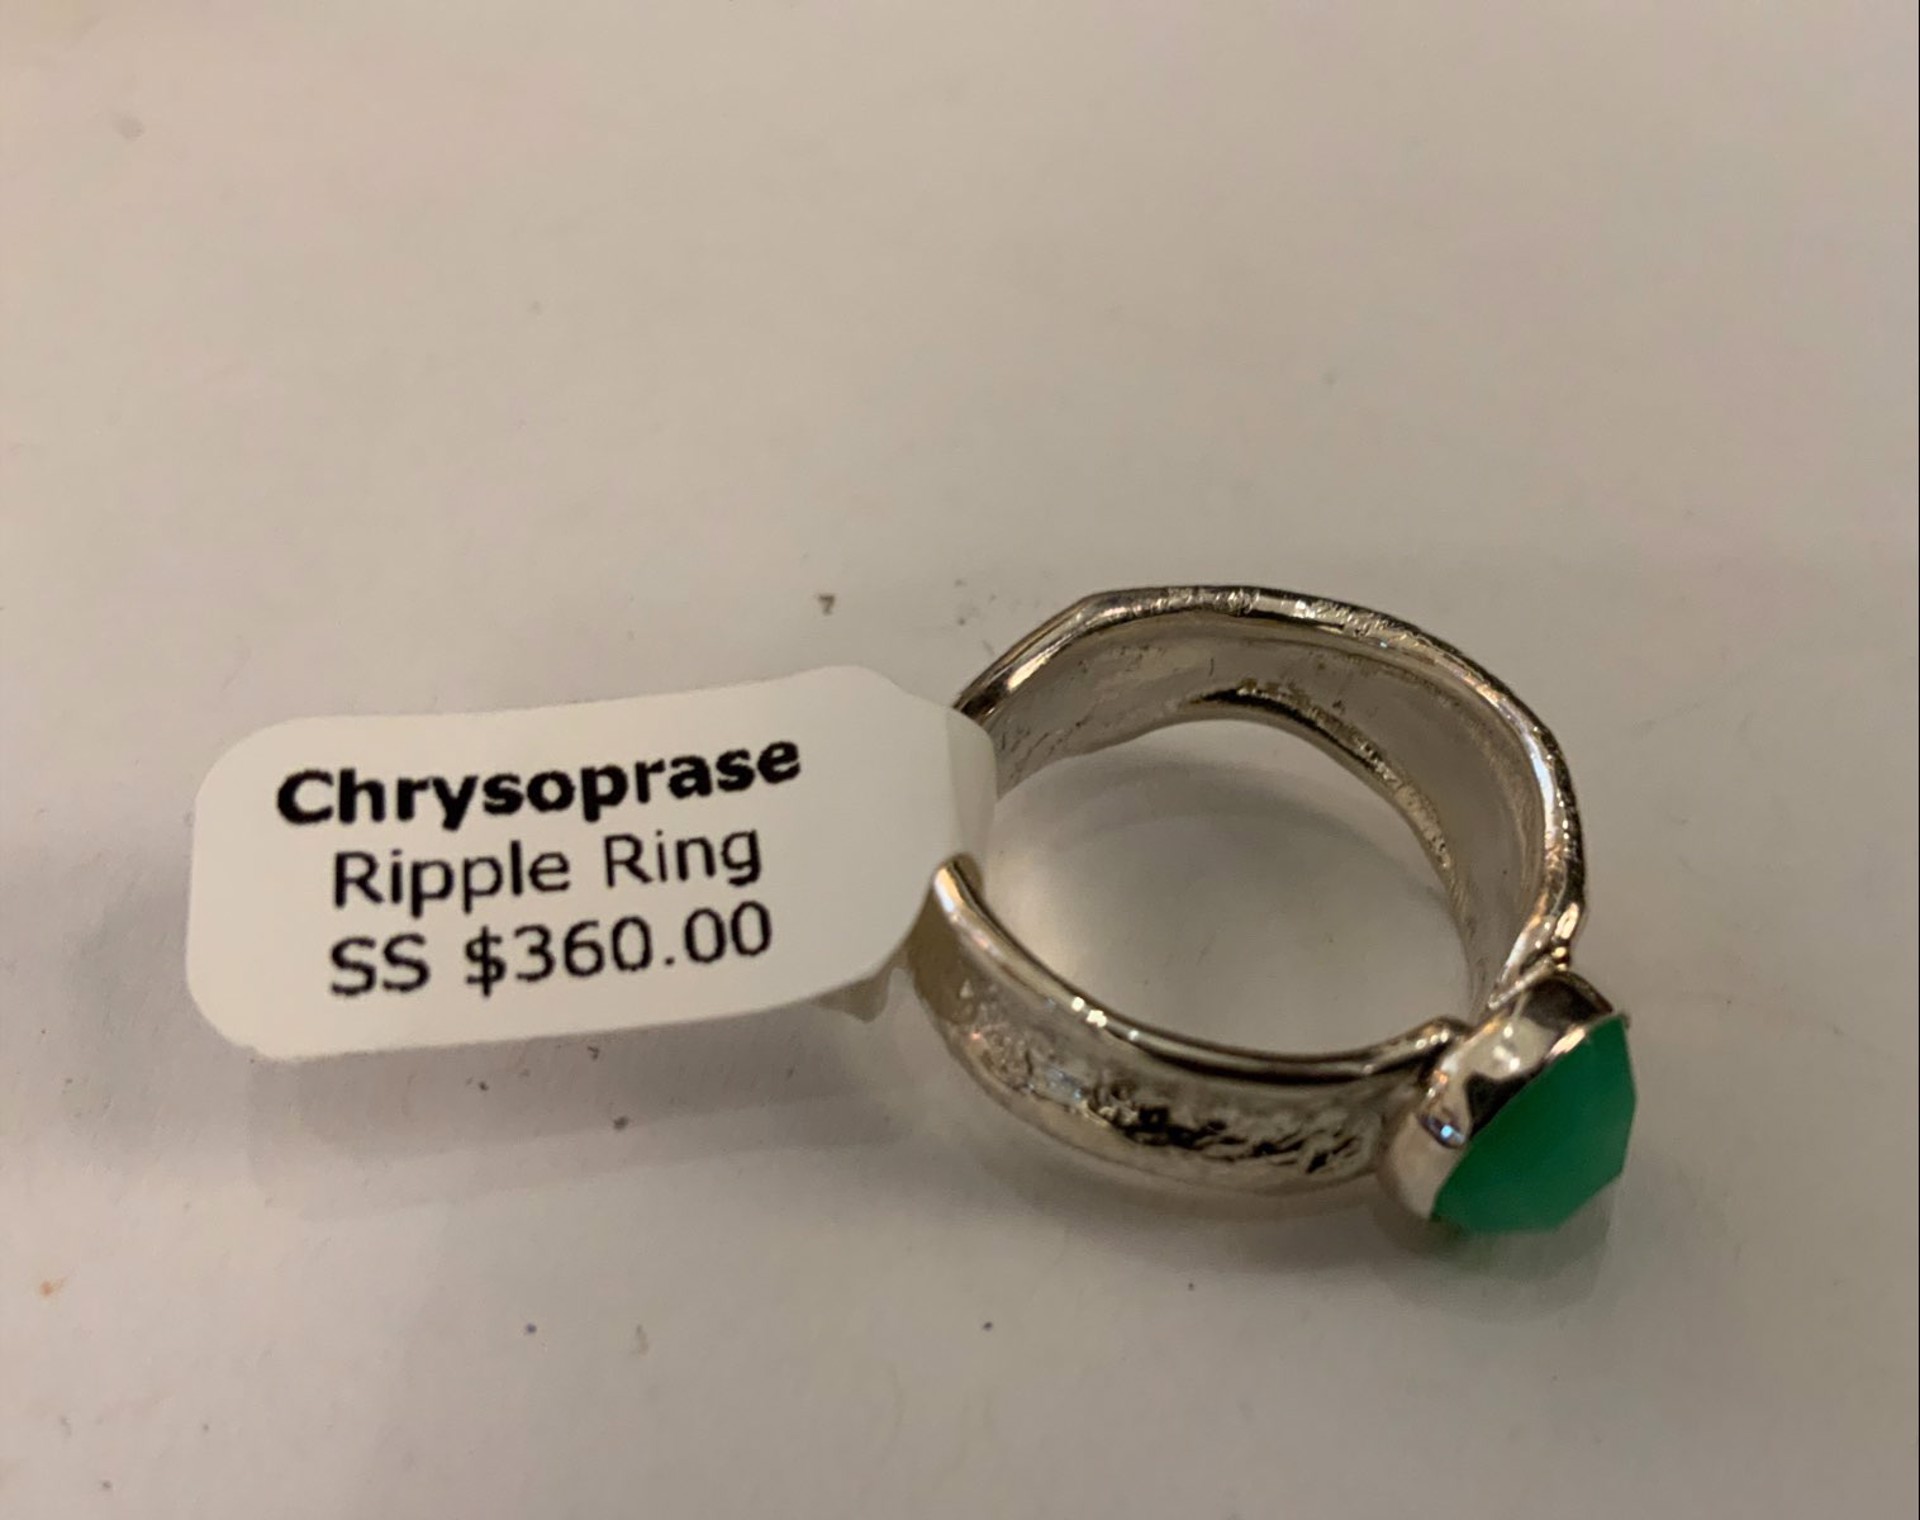 Chrysoprase Sterling Silver Ripple Ring by Kristen Baird